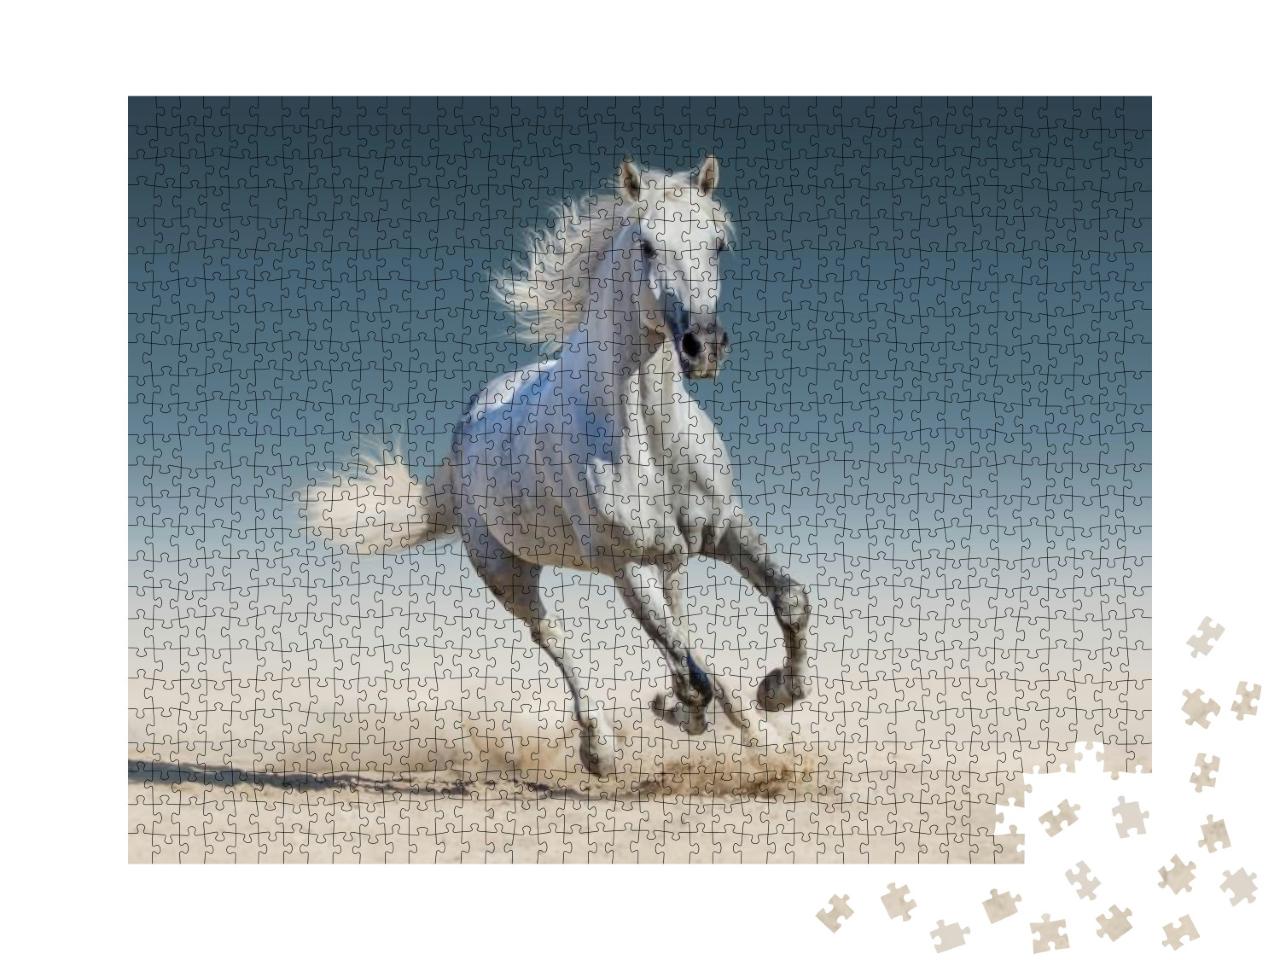 Puzzle 1000 Teile „Weißes Pferd läuft im Galopp“